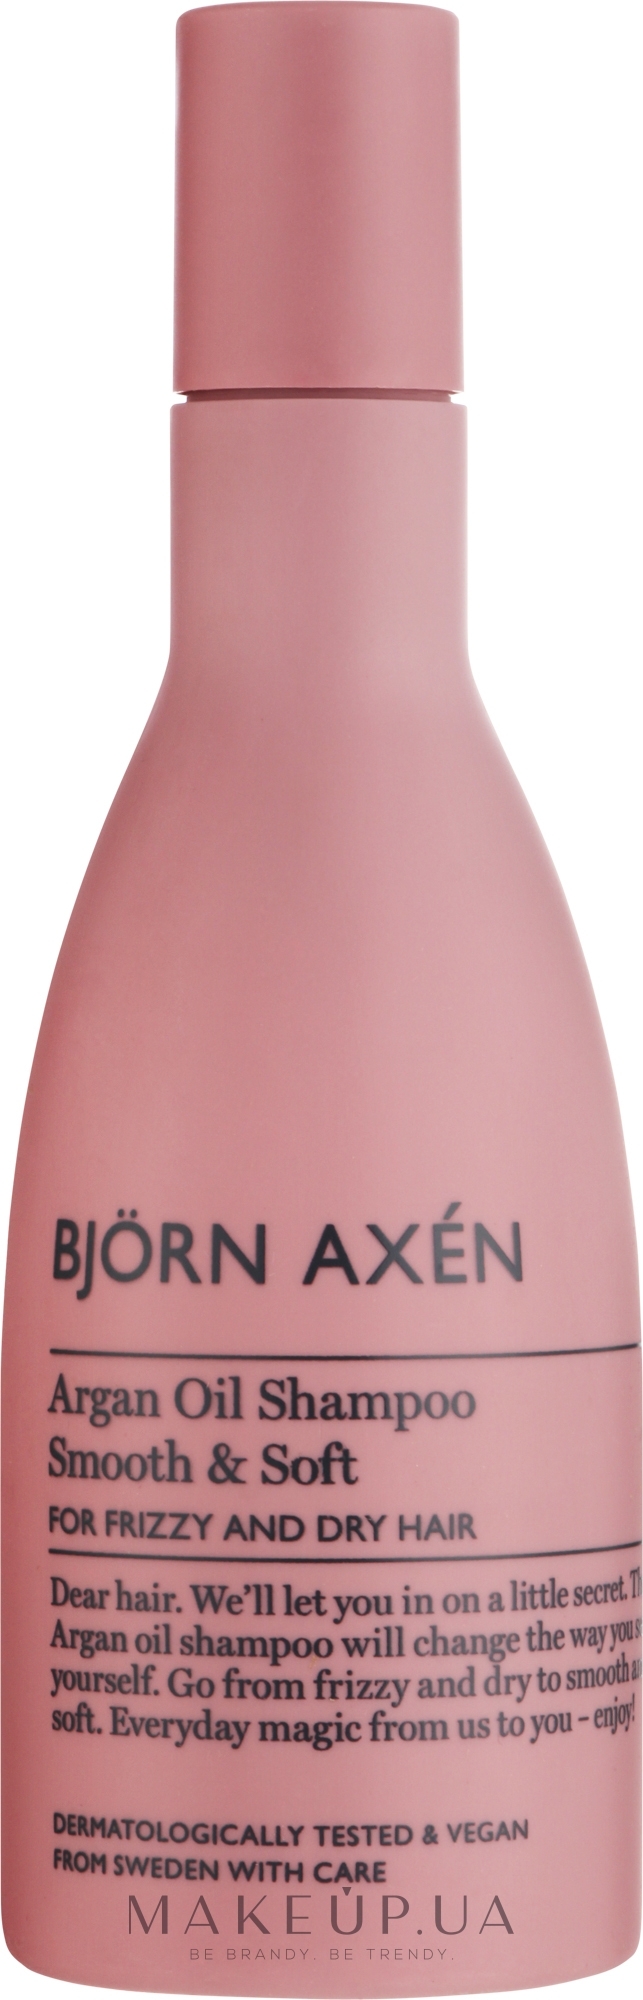 Шампунь для волос - BjOrn AxEn Argan Oil Shampoo  — фото 250ml